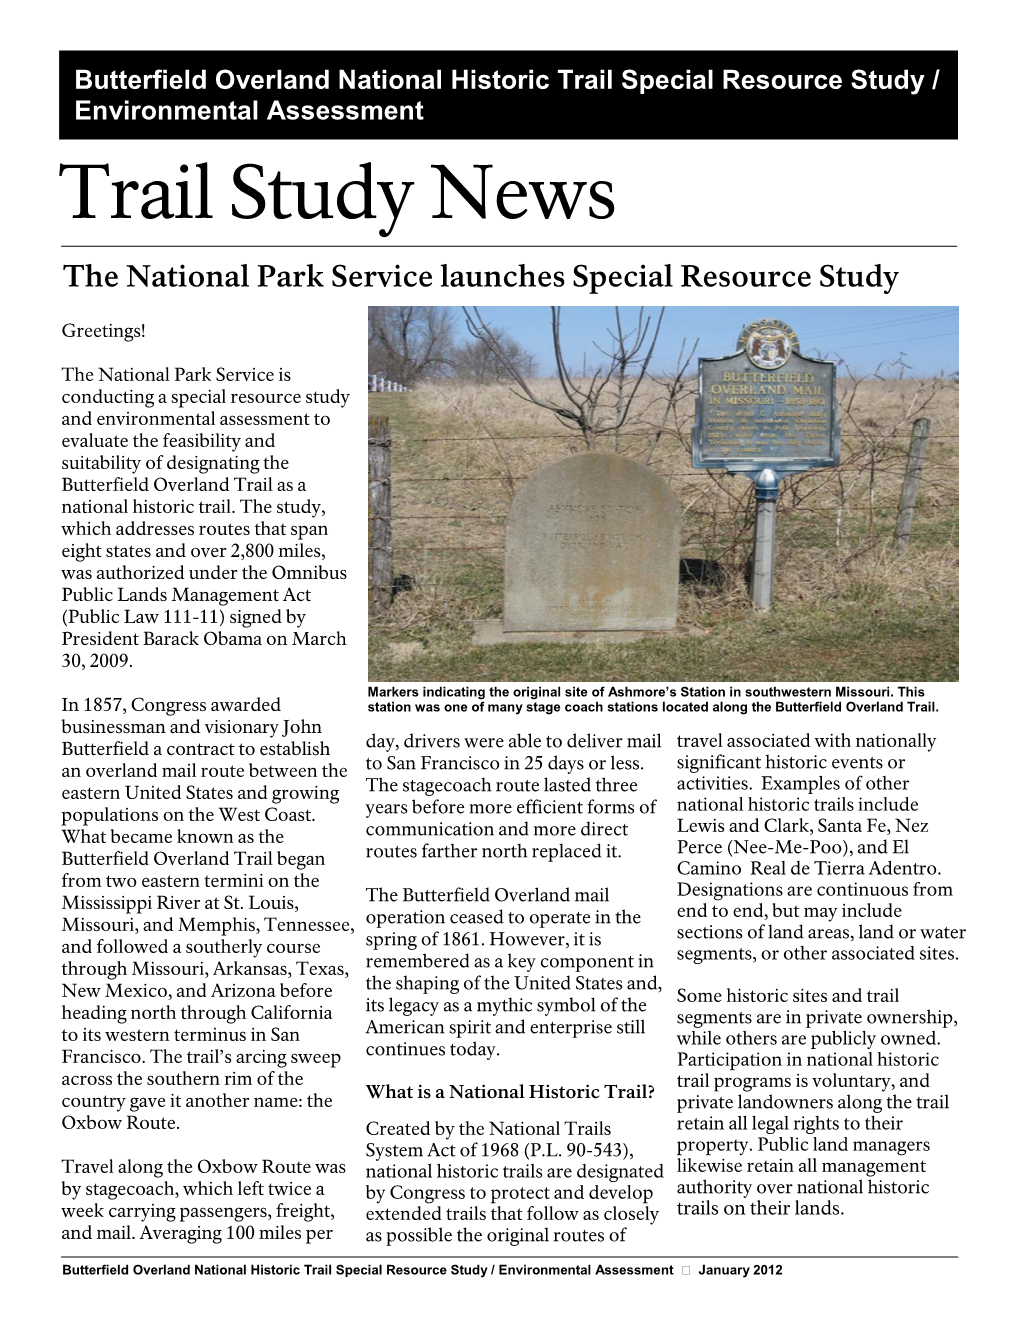 Trail Study News